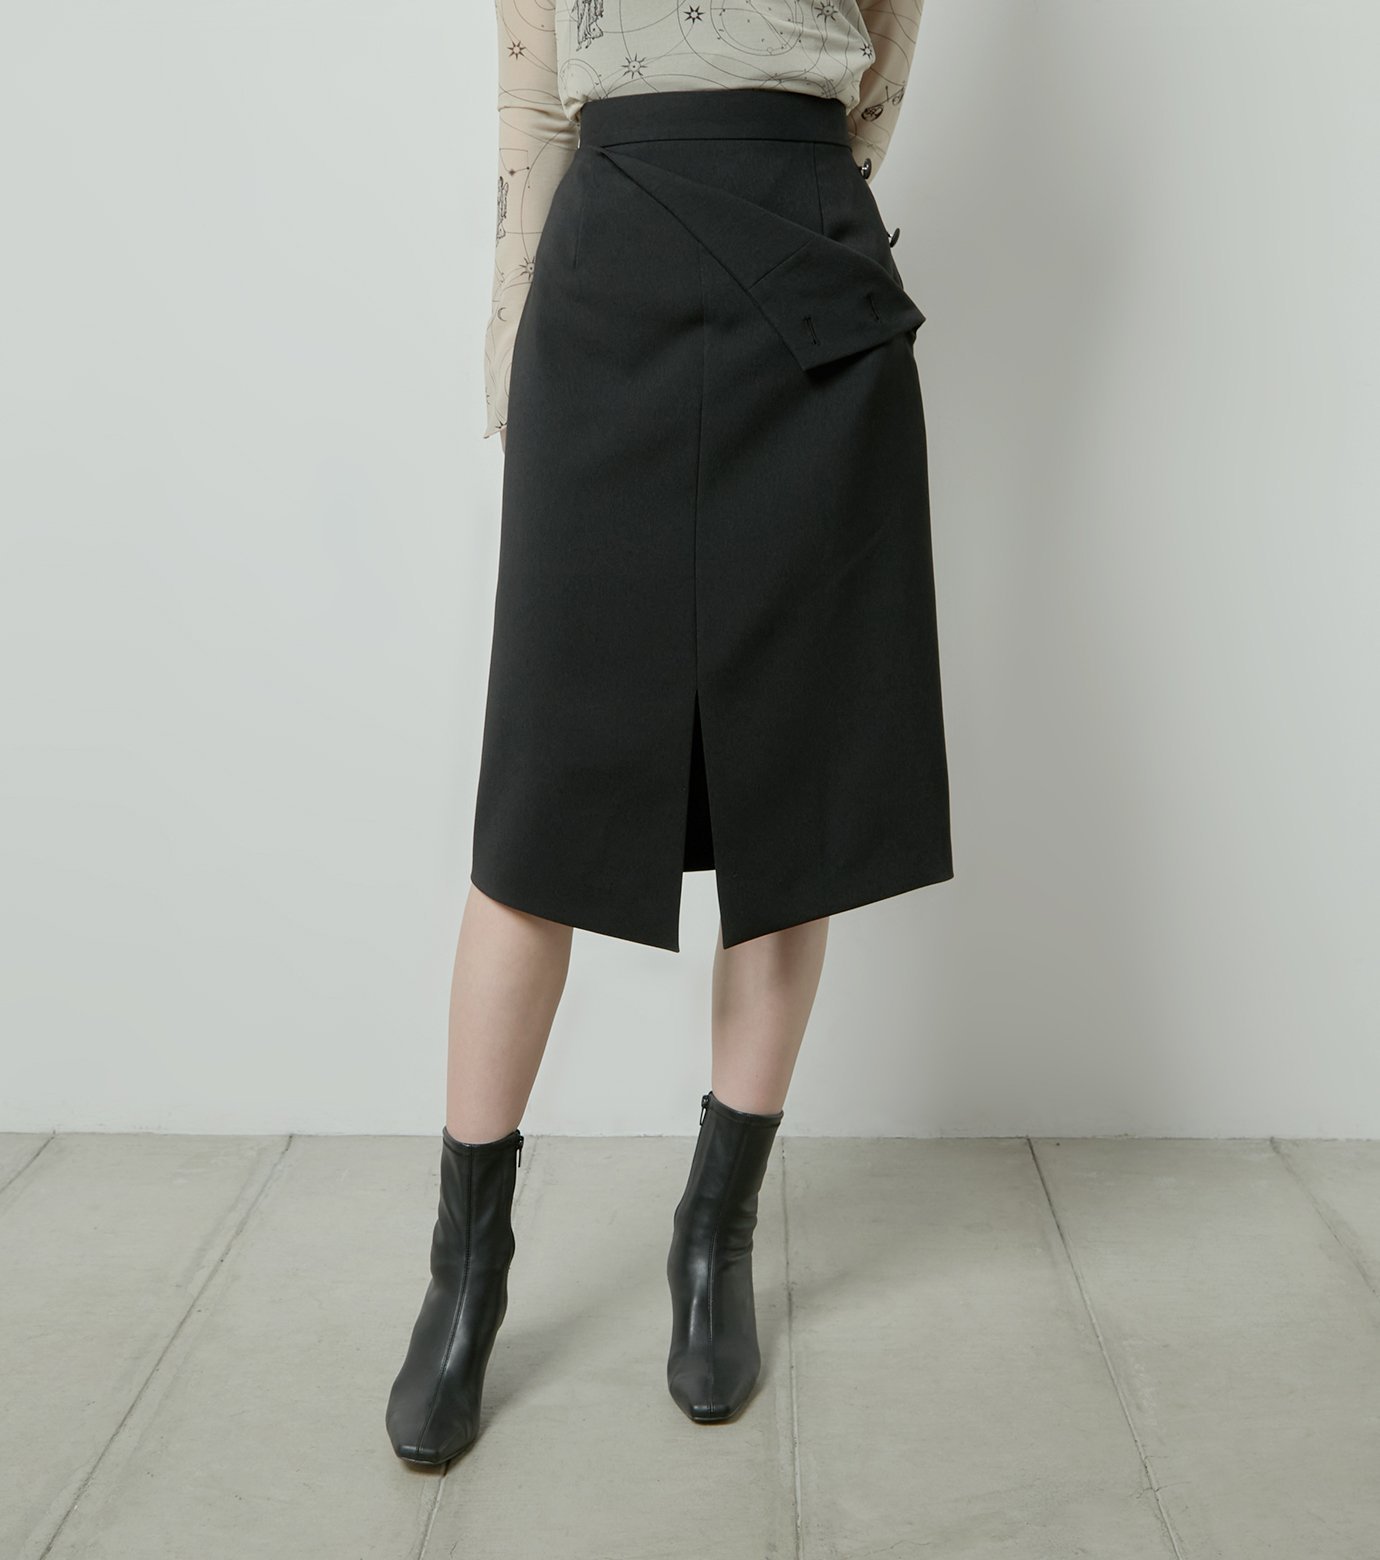 LE CIEL BLEU デタッチャブルタイトスカート / Detachable Tight Skirt ルシェルブルー スカート ミディアムスカート ブラック ネイビー【送料無料】